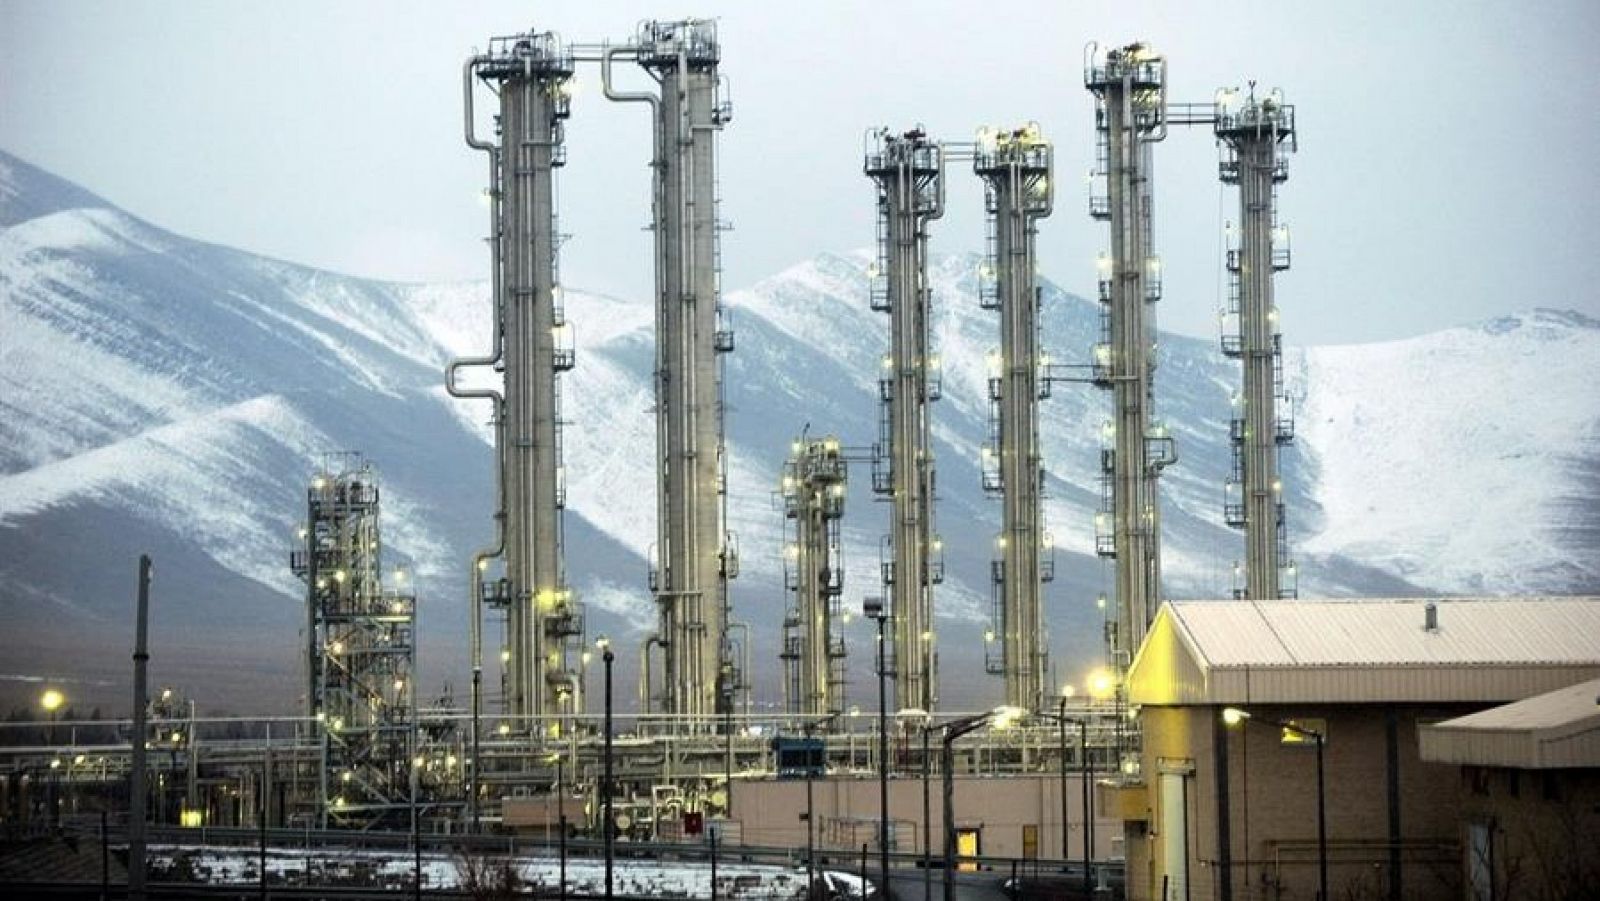 Imagen tomada el 15 de enero de 2011 que muestra el reactor de agua pesada de la ciudad de Arak (Irán).